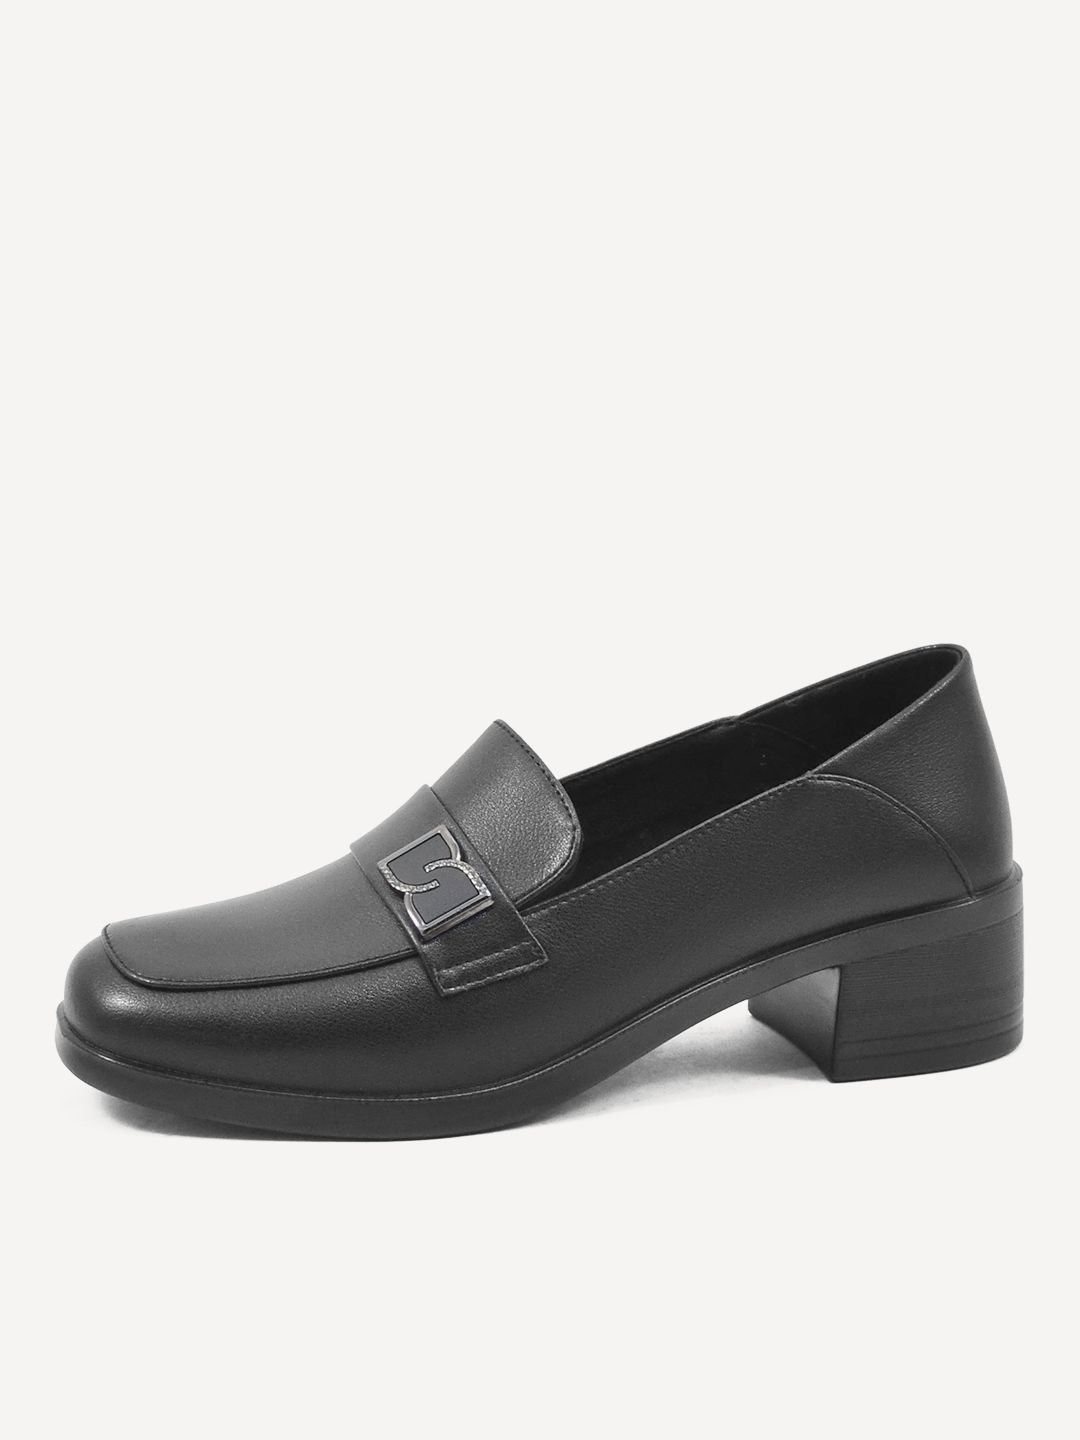 Туфли женские Baden ME301-030 черные 40 RU